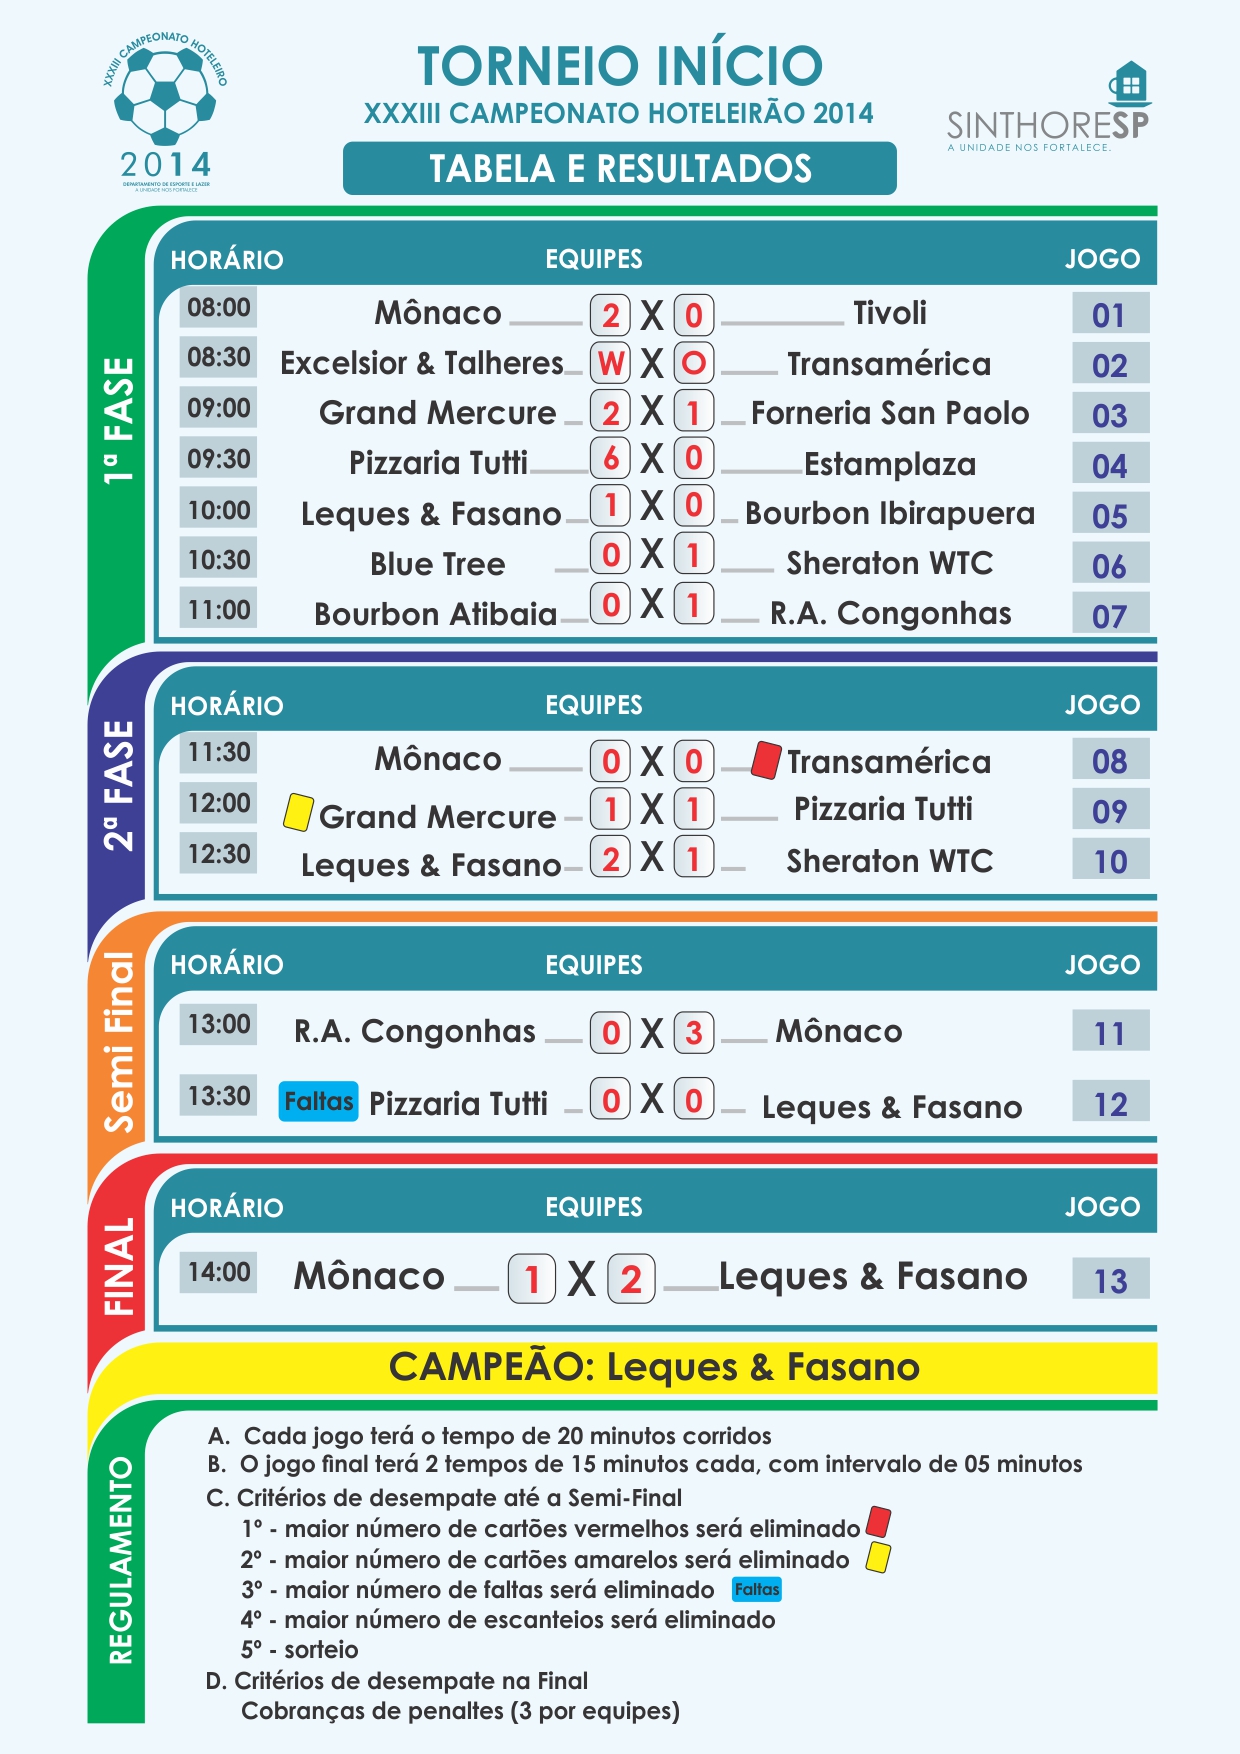 Campeonato Hoteleiro 2014 - Torneio Início